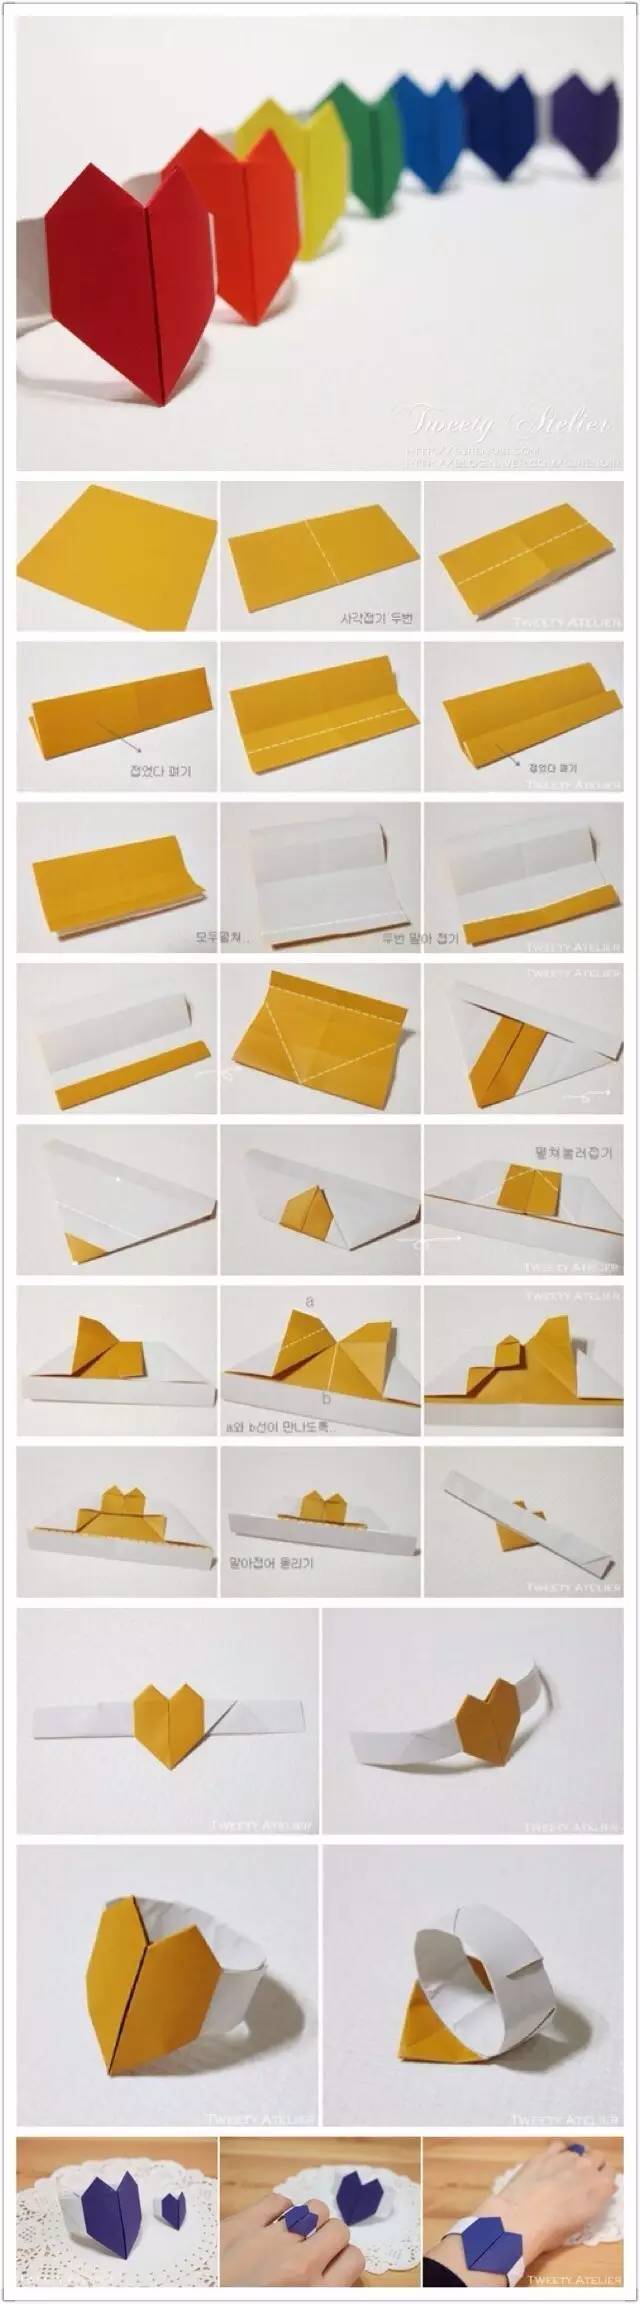 y 「折纸教程」 挺羡慕会折纸的妹子汉子 总感觉 一张白纸或者彩纸 在